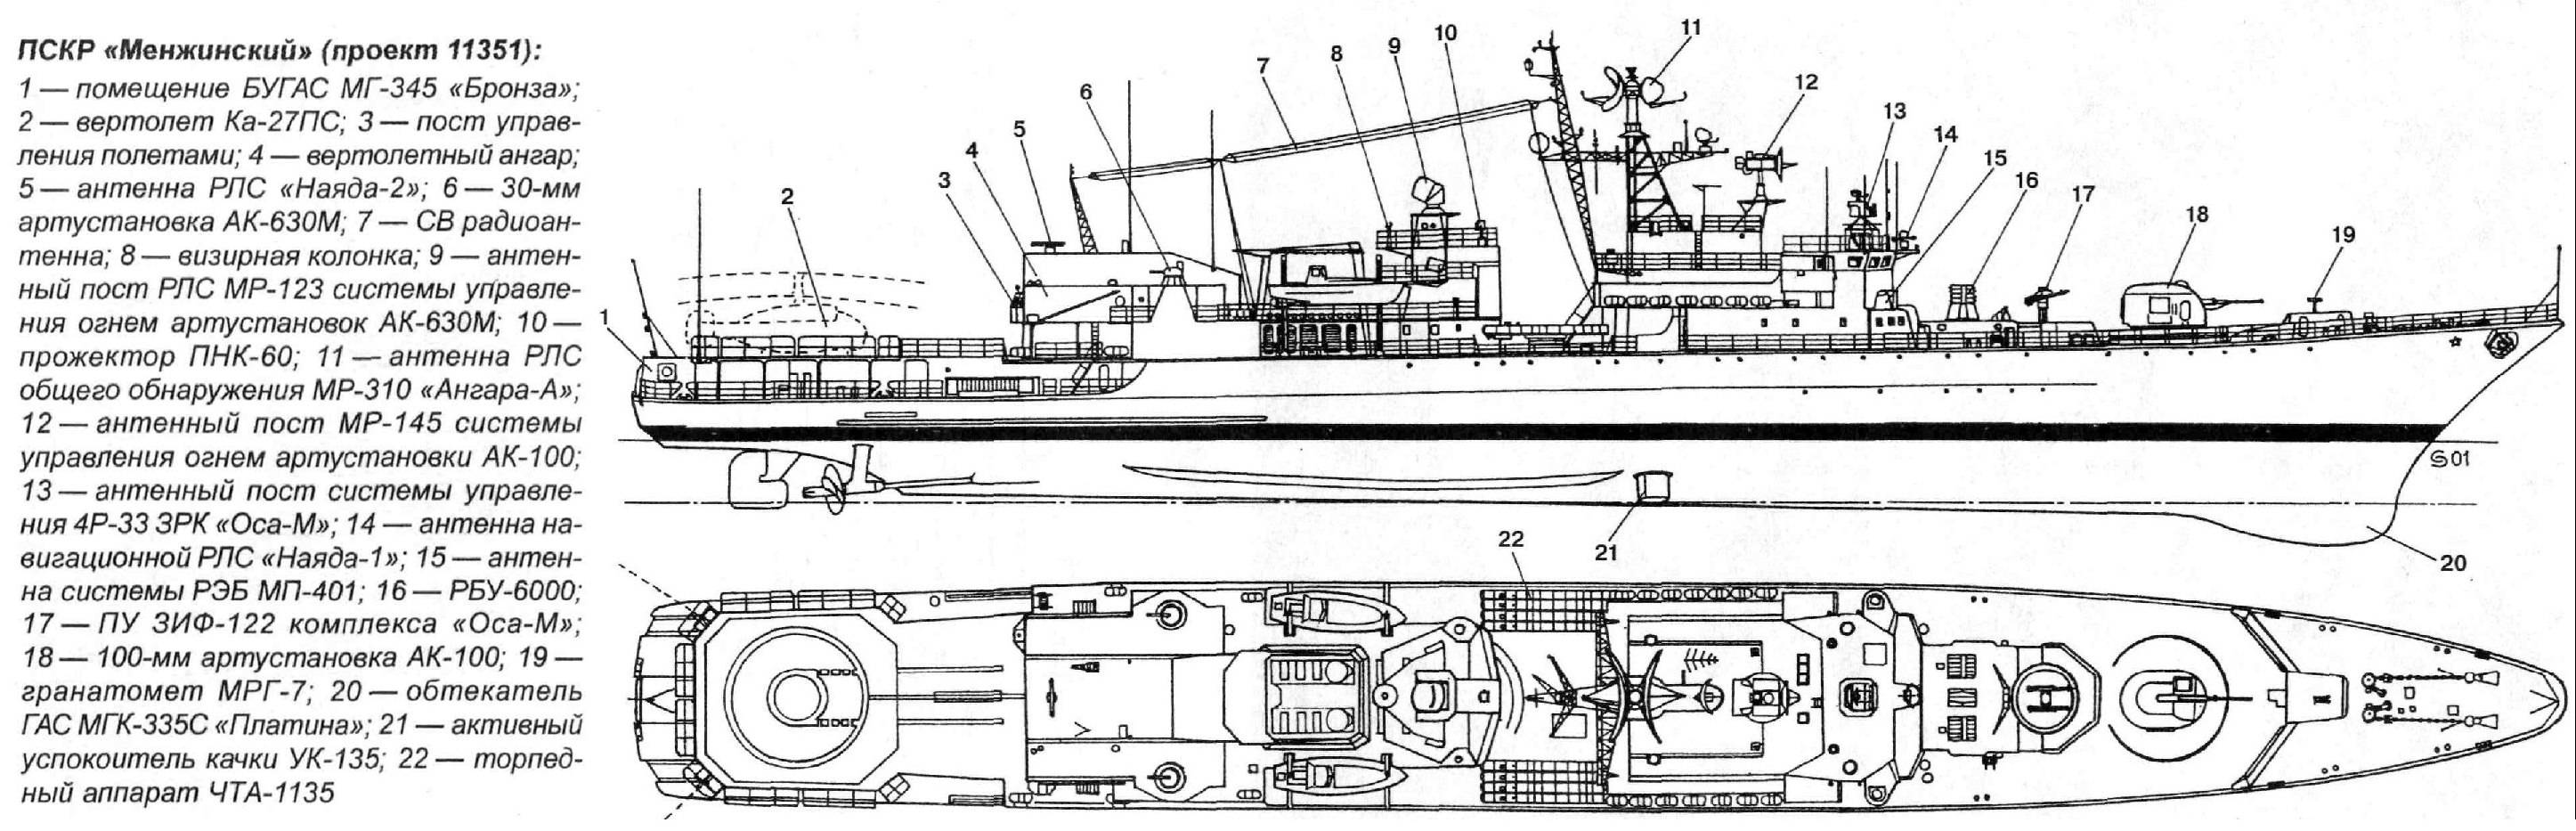 Проект 11351 («нерей») - 6 единиц. боевые корабли мира на рубеже xx - xxi веков часть iii фрегаты